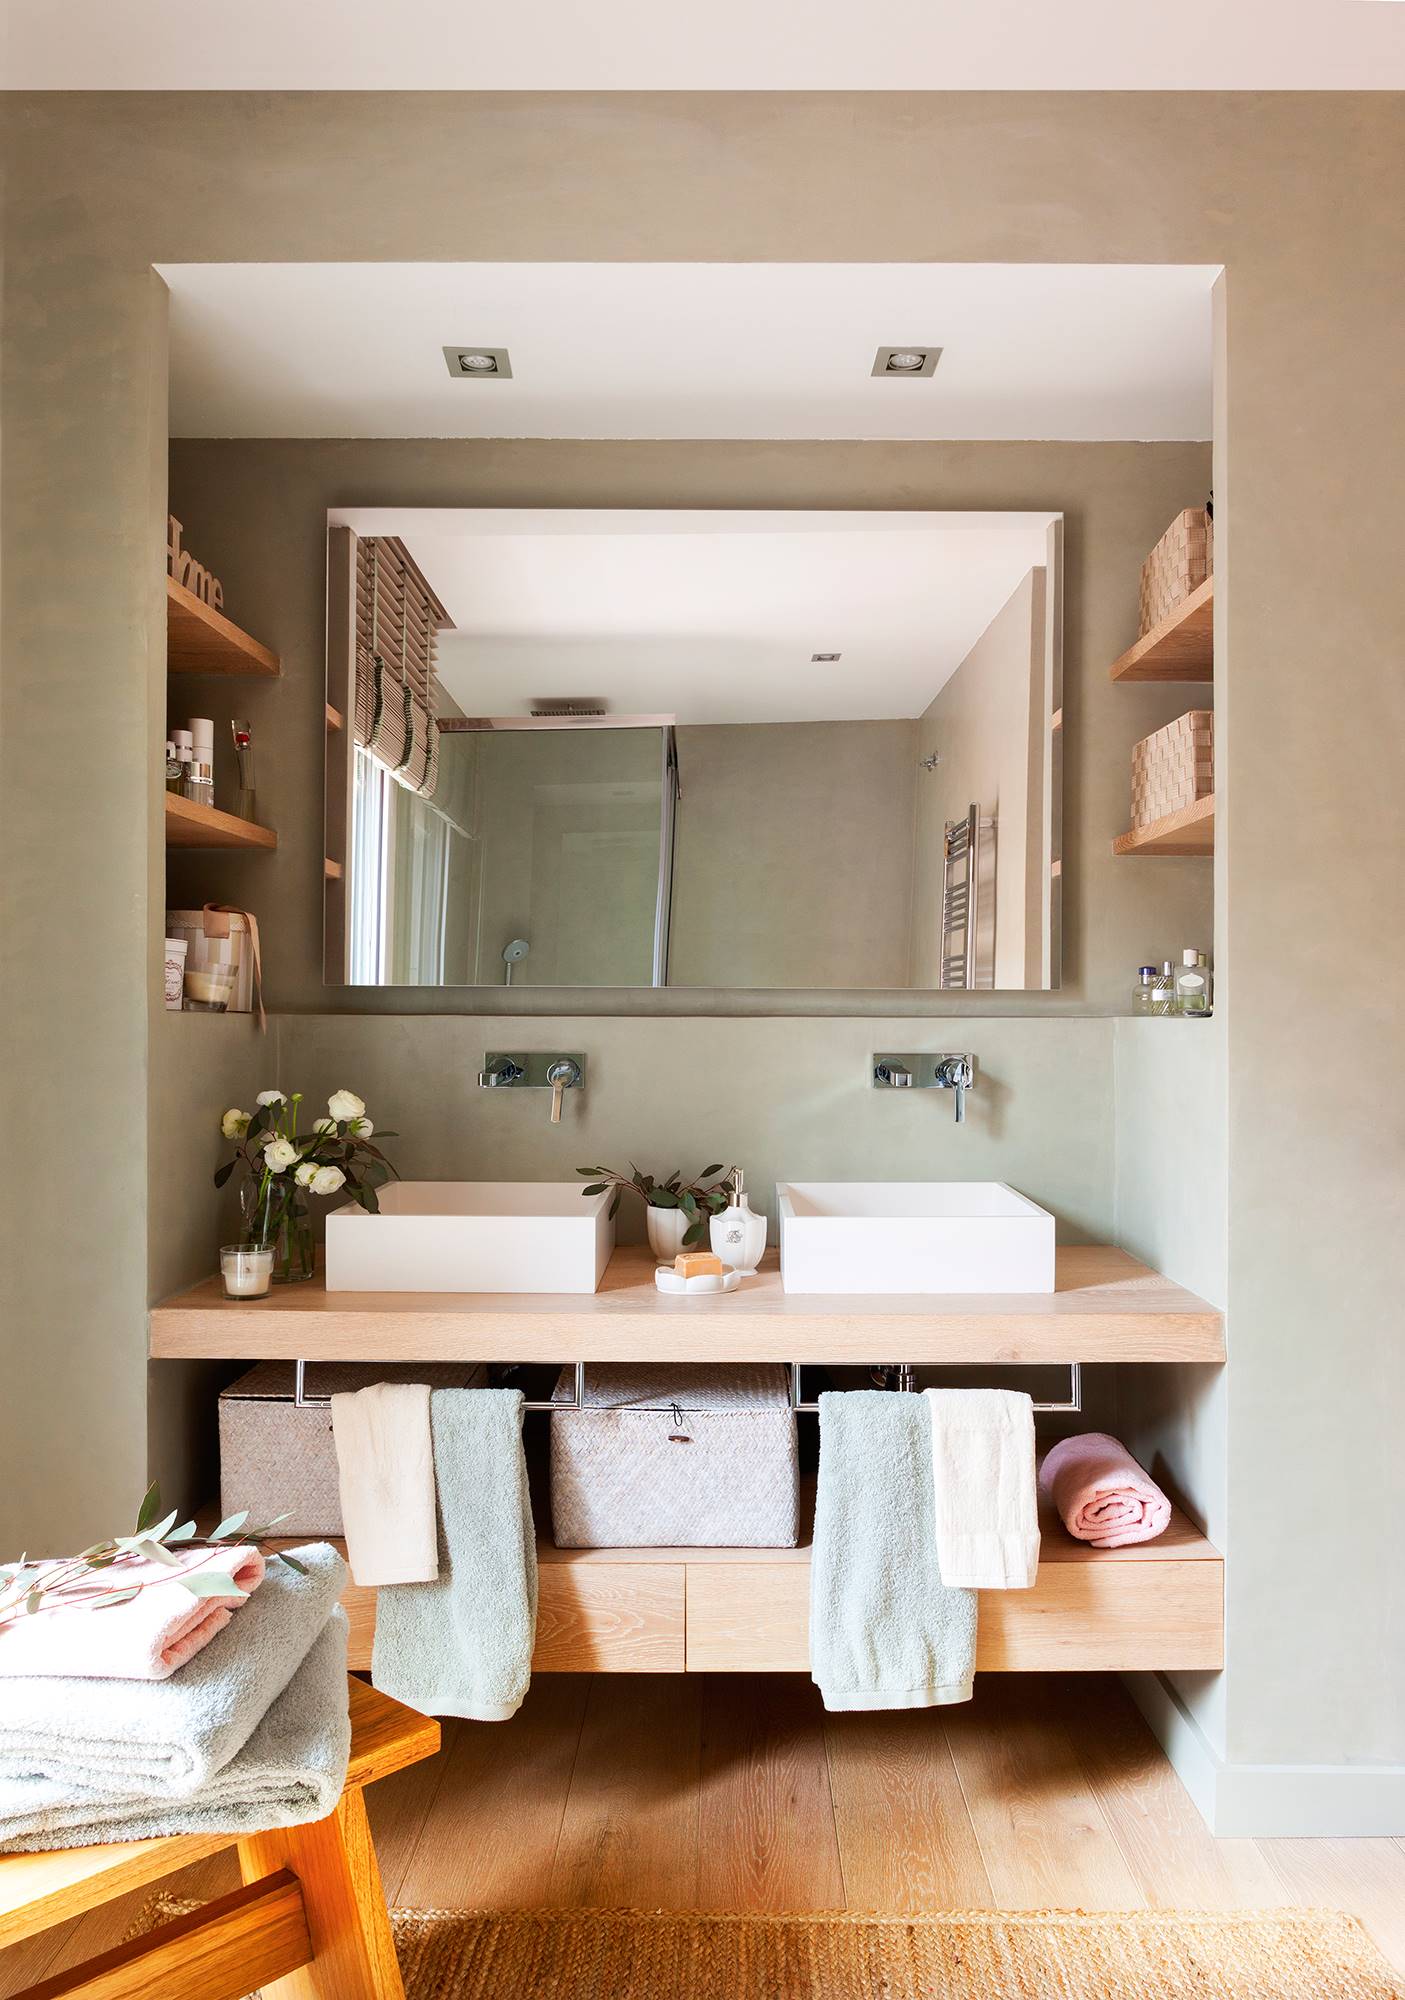 Baño con paredes verdes, mueble volado y estantes a modo de hornacina_ 00424415